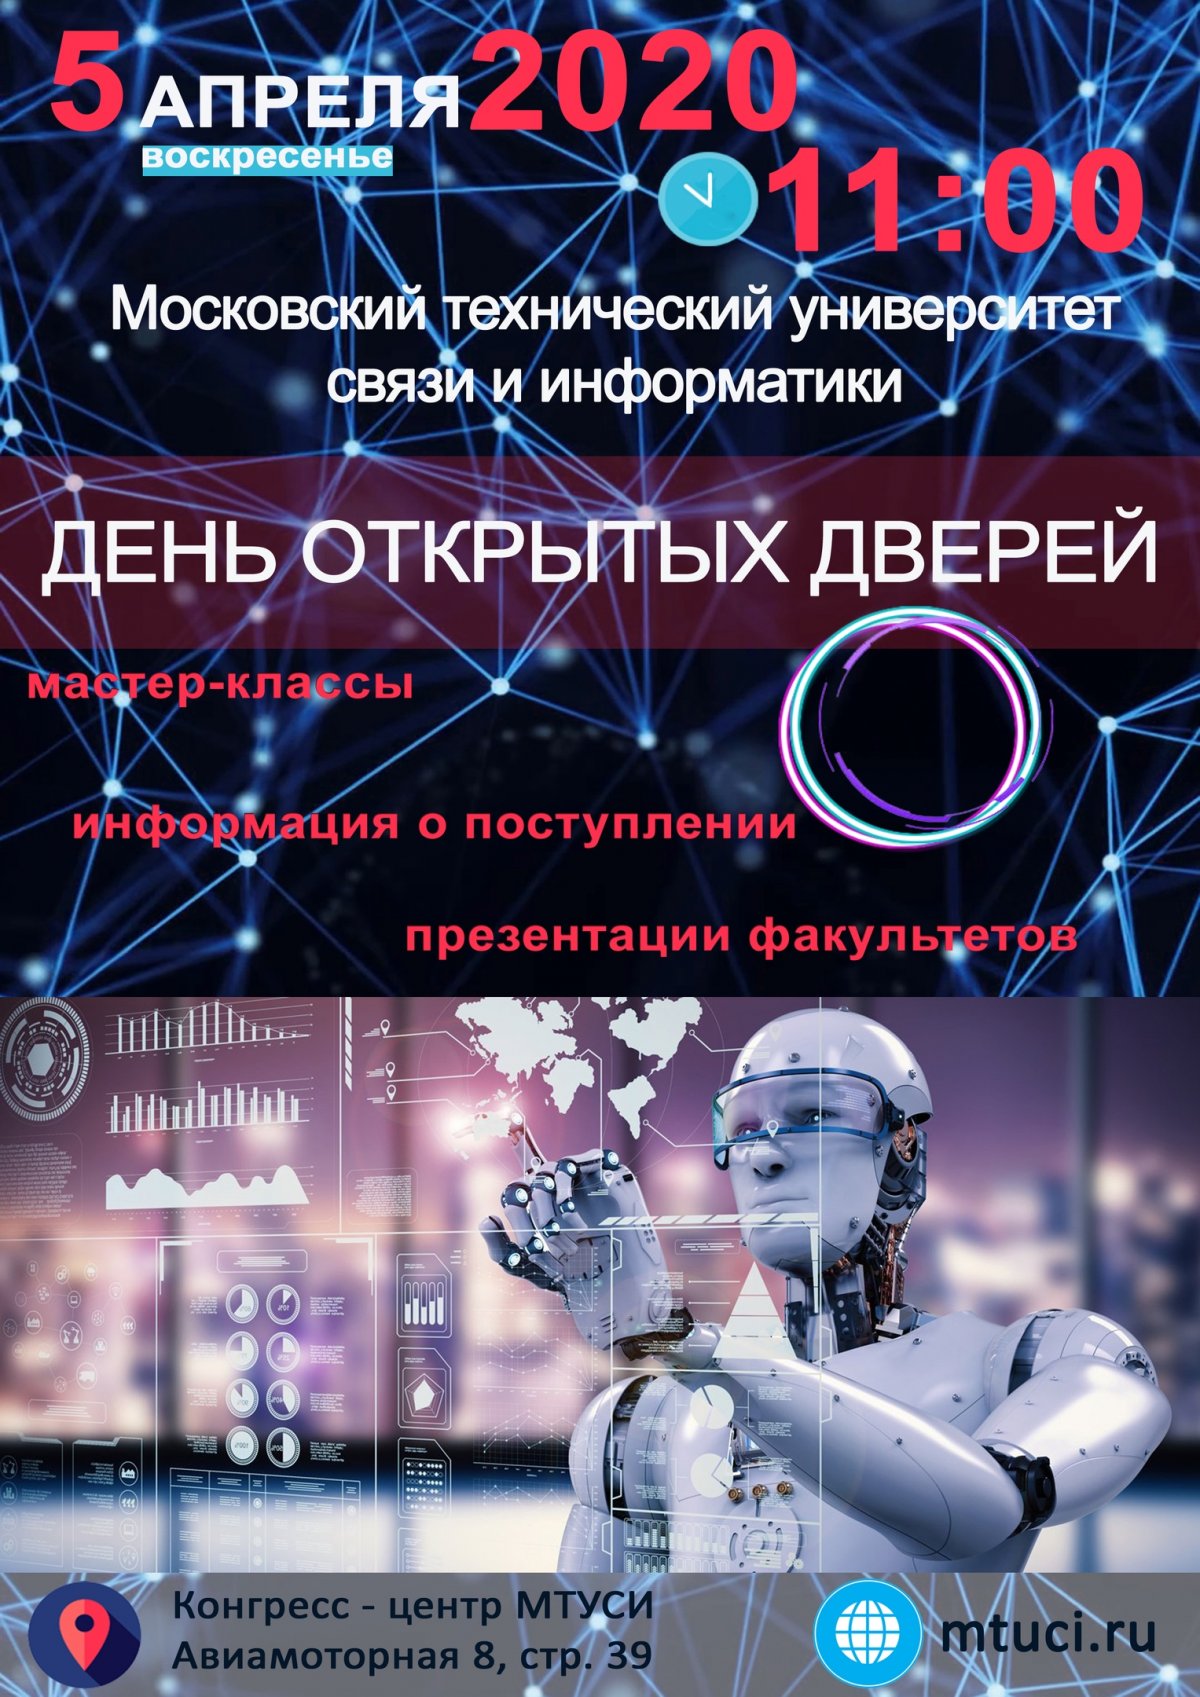 5 апреля 2020 года в 11:00 Московский технический университет связи и информатики (МТУСИ) открывает двери будущим абитуриентам, их родителям и друзьям.